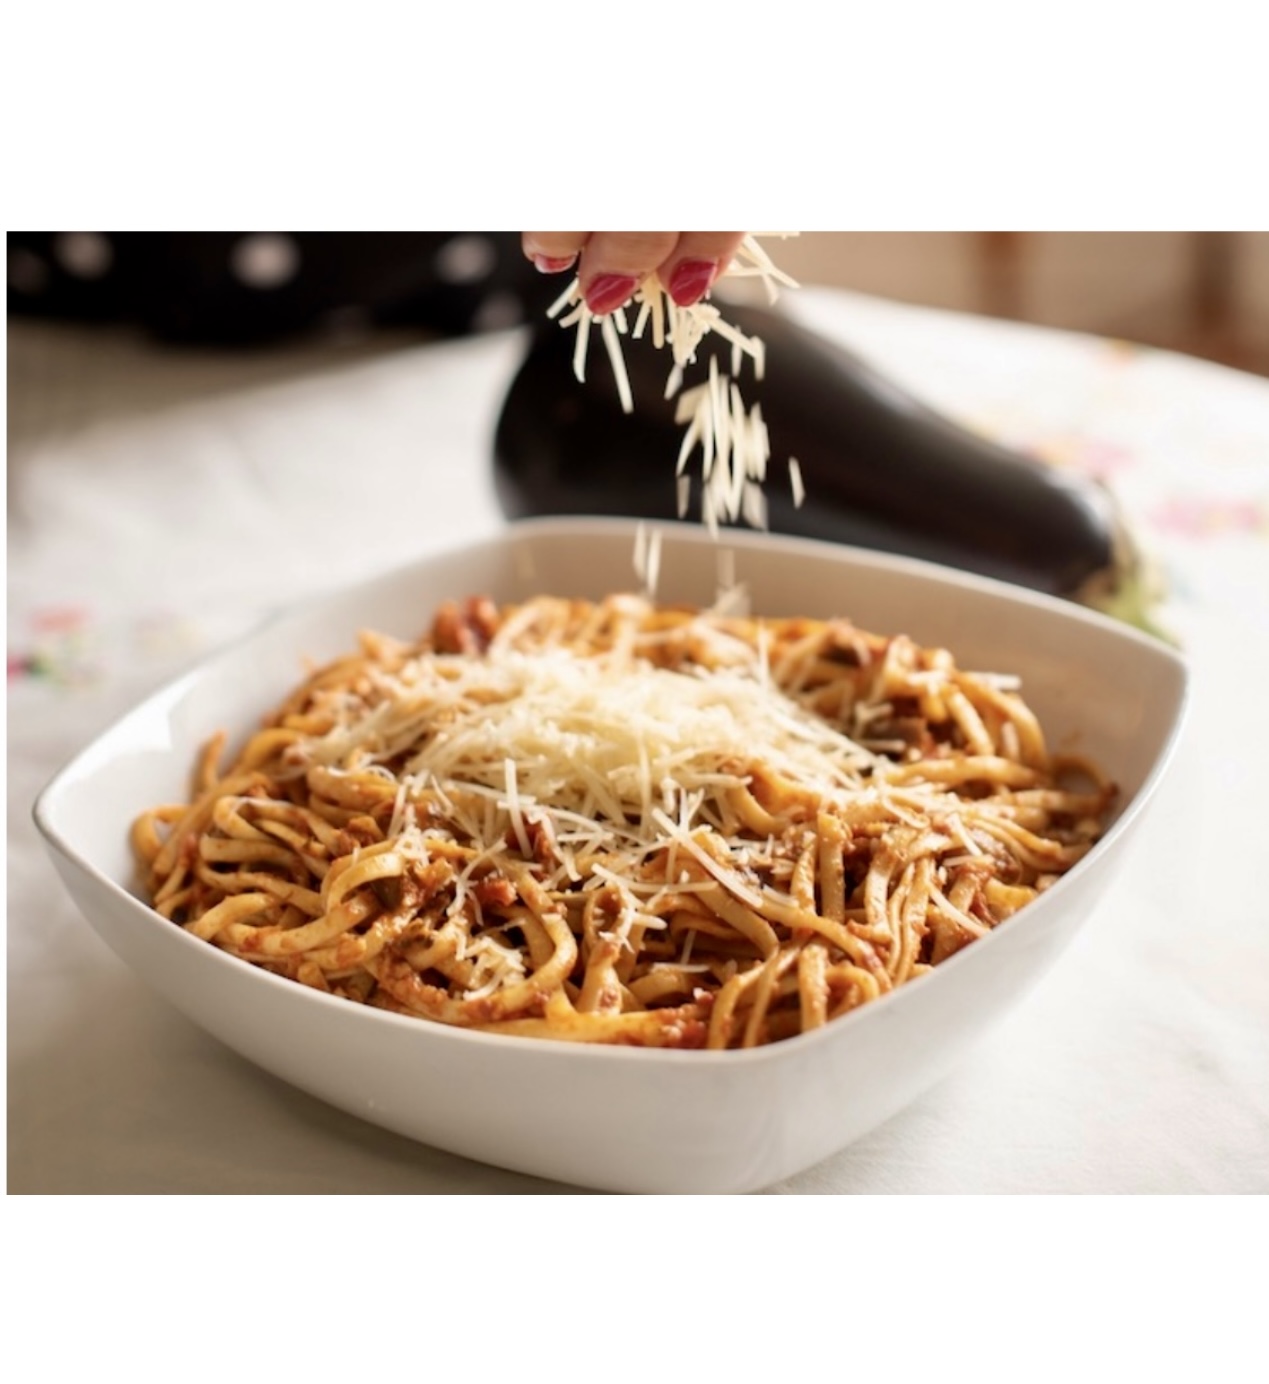 Une personne arrosant du parmesan sur un bol de Linguini à la sauce tomate et spaghetti aubergine.